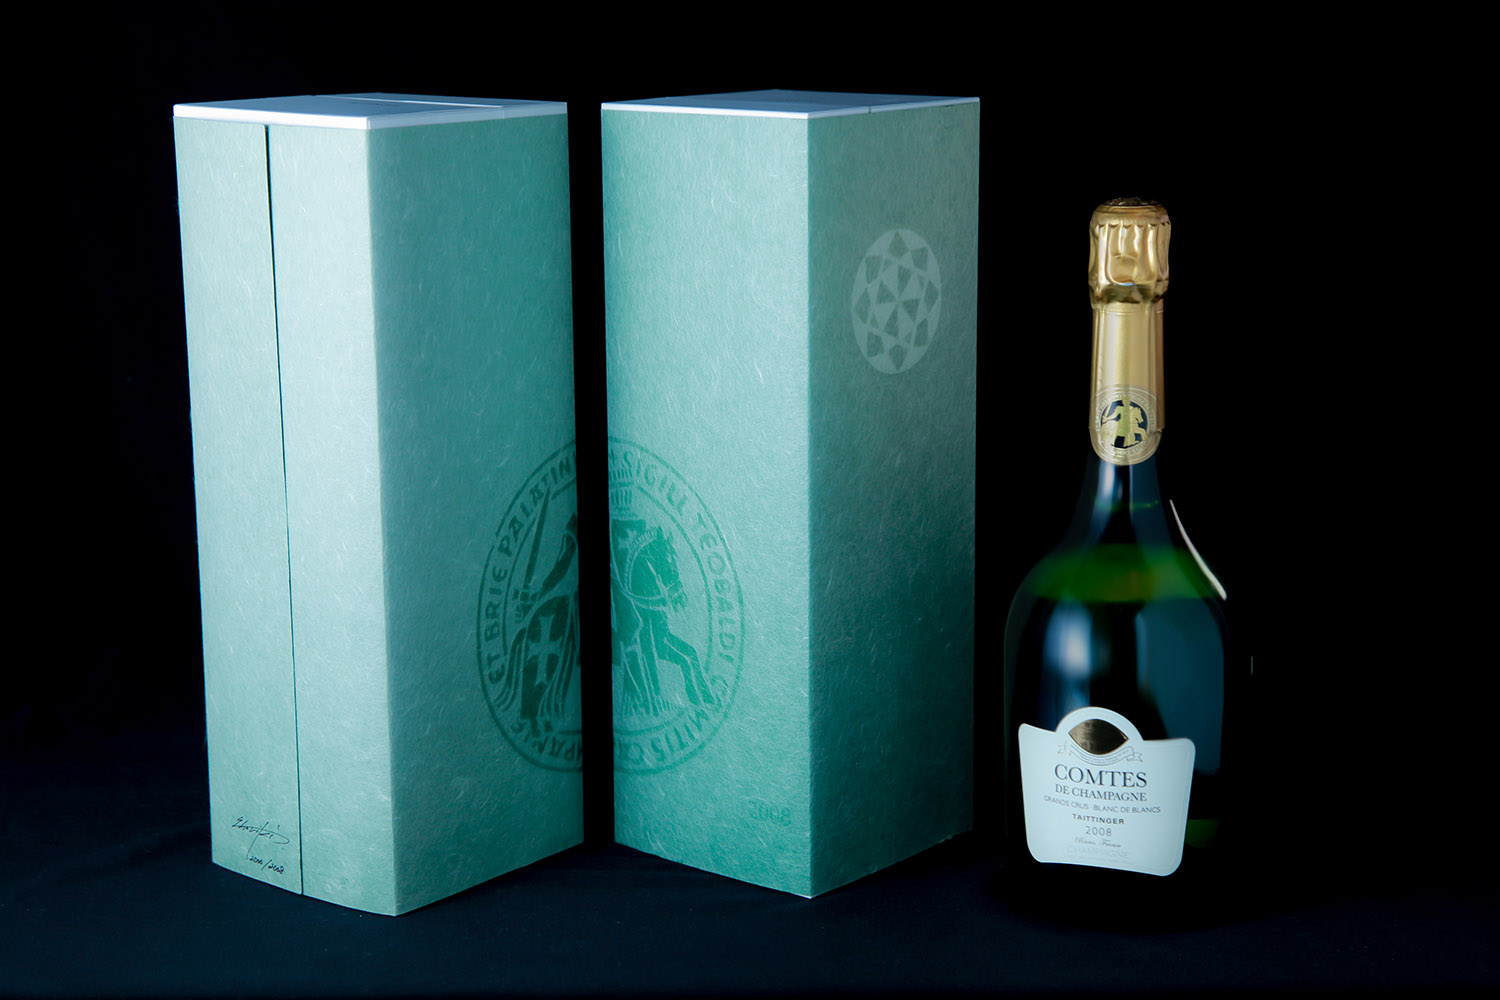 Taittinger Comtes de Champagne Blanc de Blancs 2008 (Limited Edition)